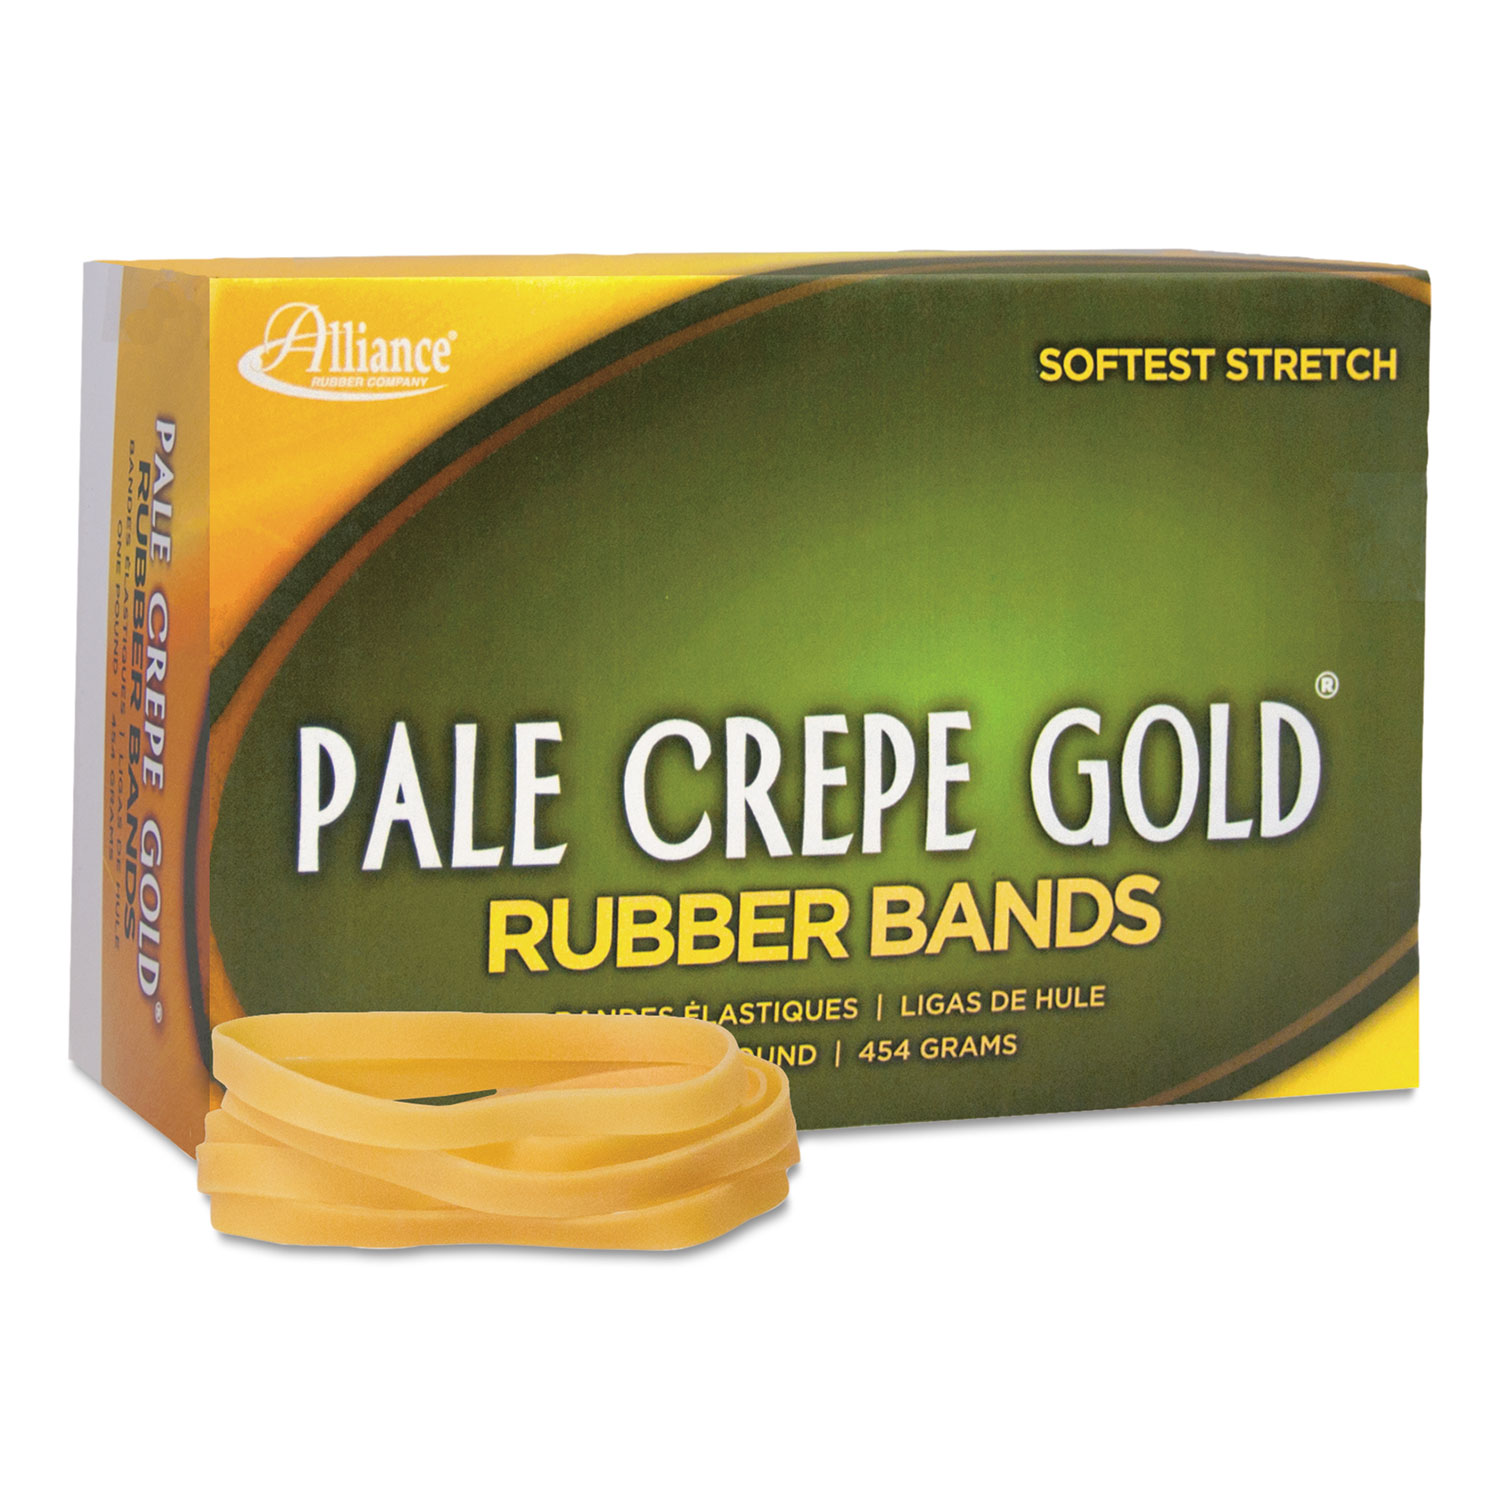 Pale Crepe Gold Rubber Bands, Sz. 64, 3-1/2 x 1/4, 1lb Box